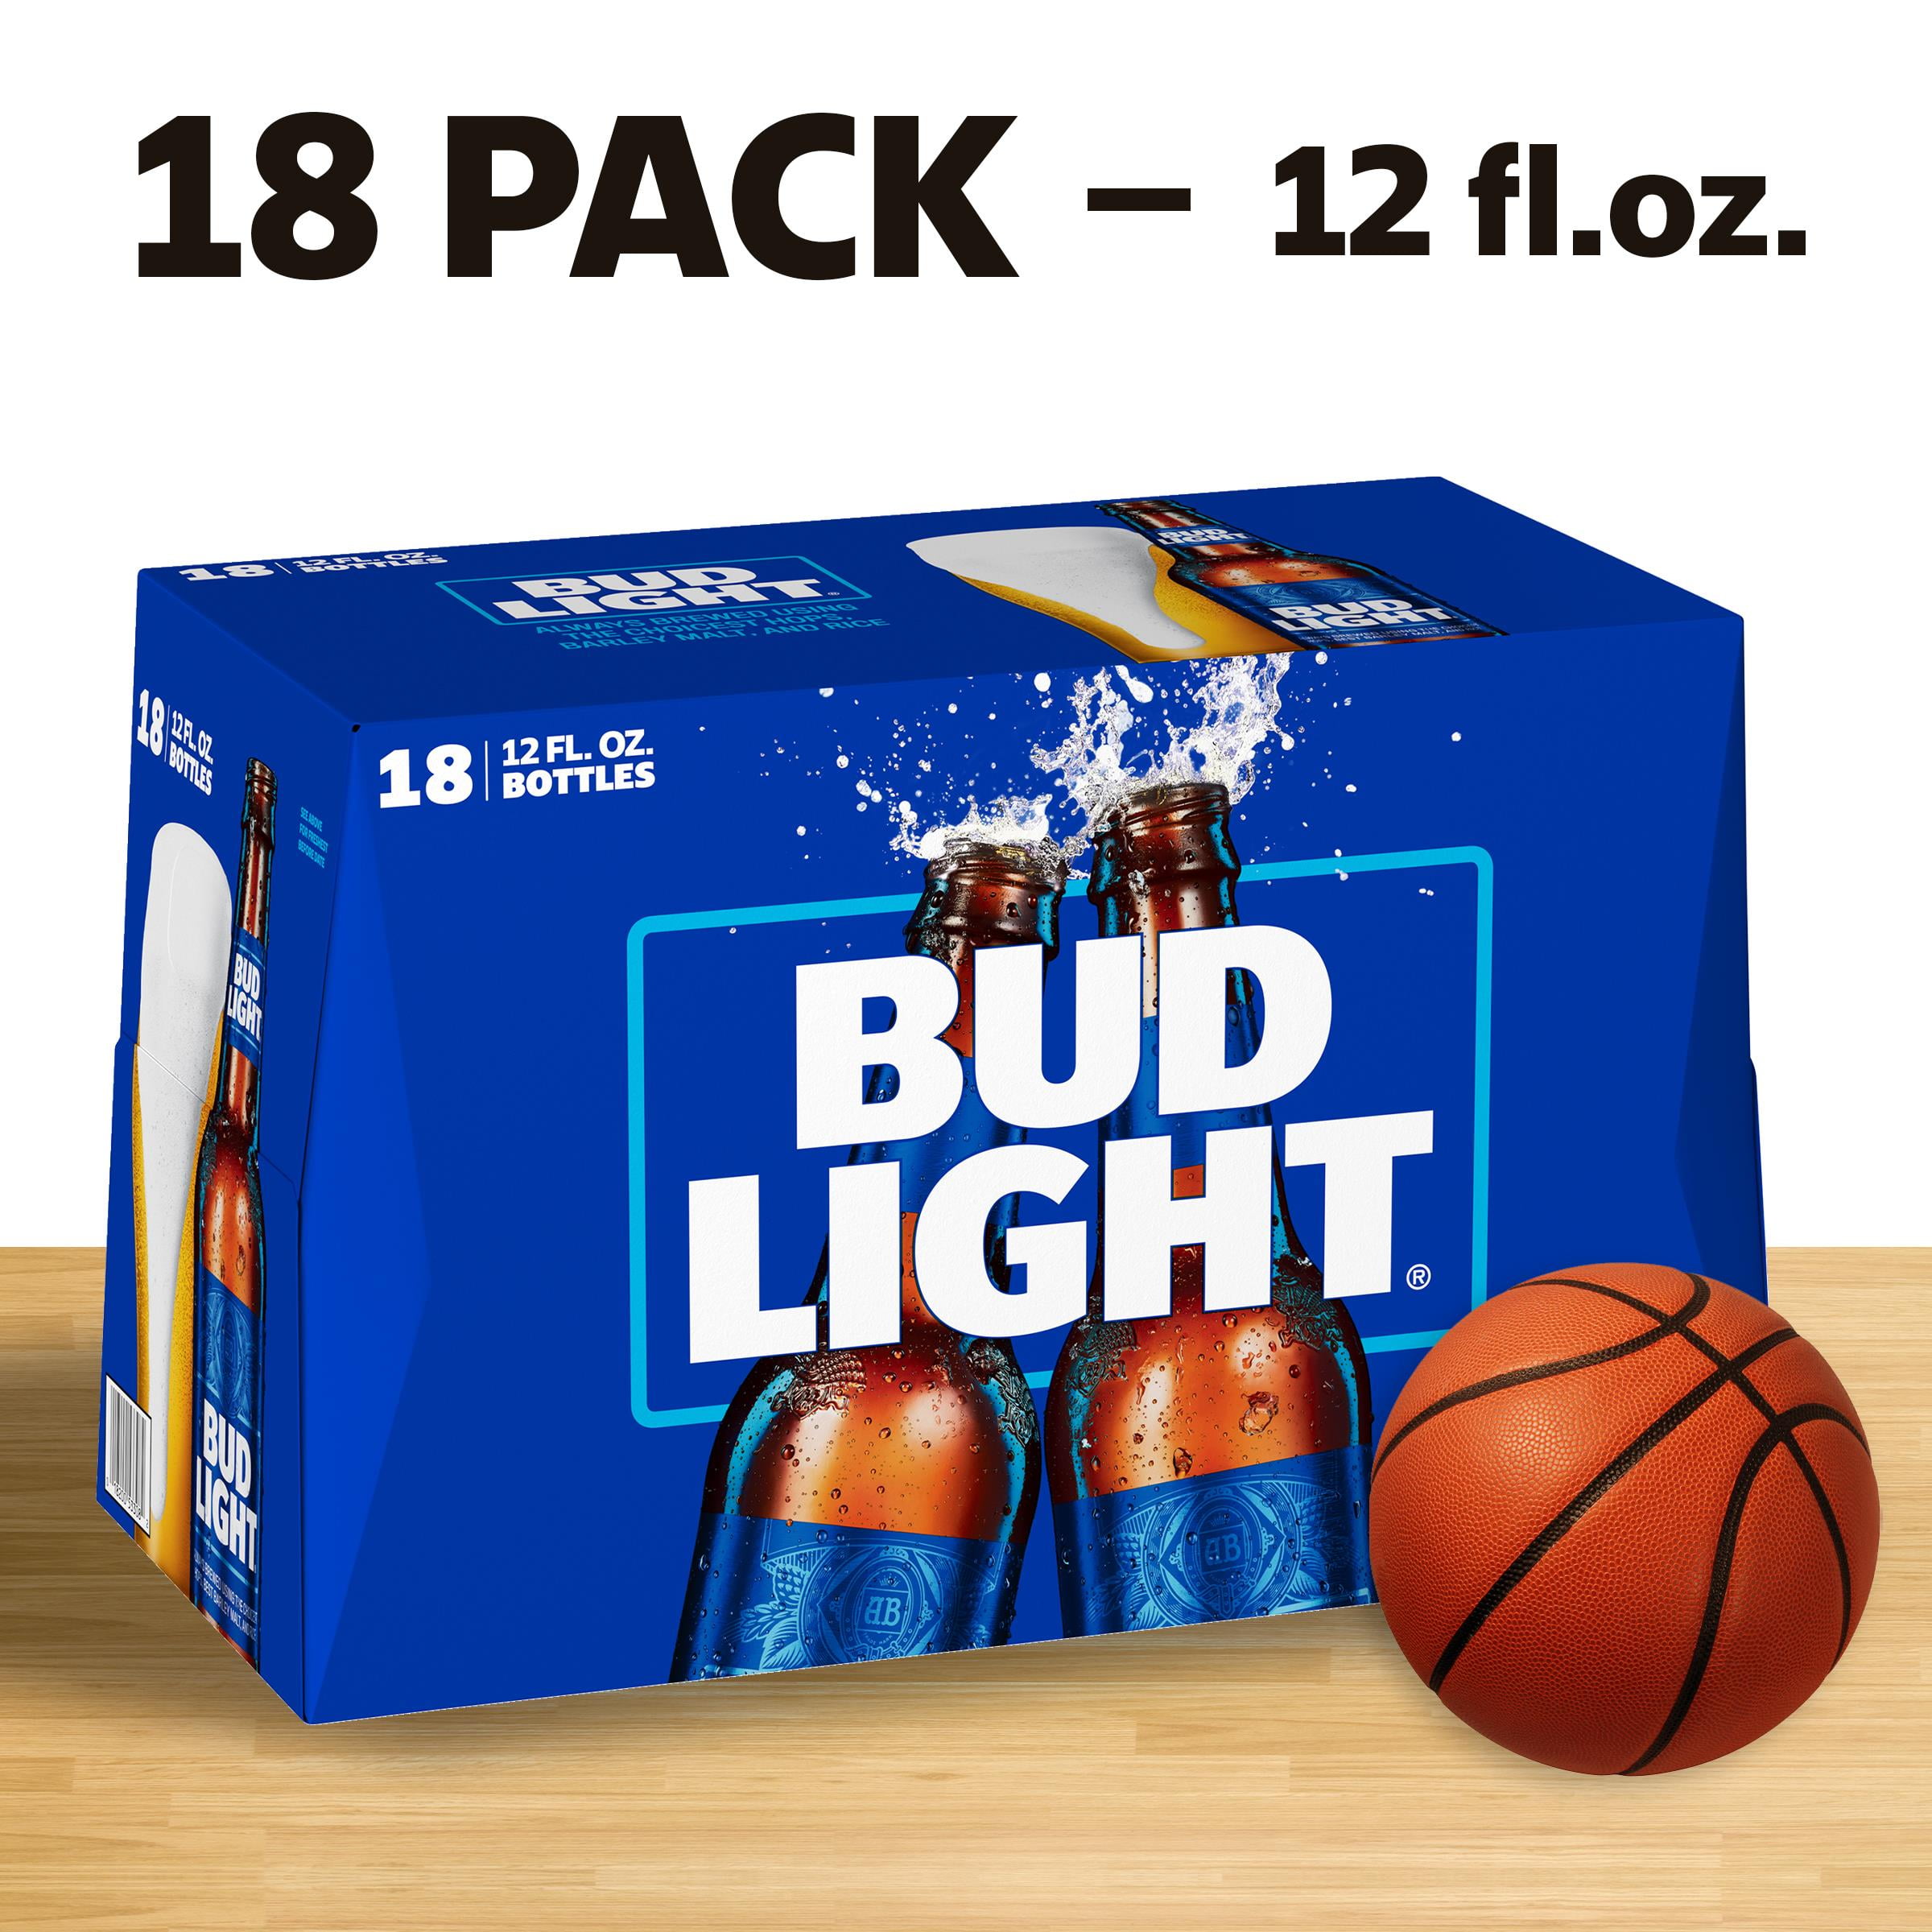 Bud Light Beer, 18 Pack Beer, 12 FL OZ Bottles, 4.2 ABV